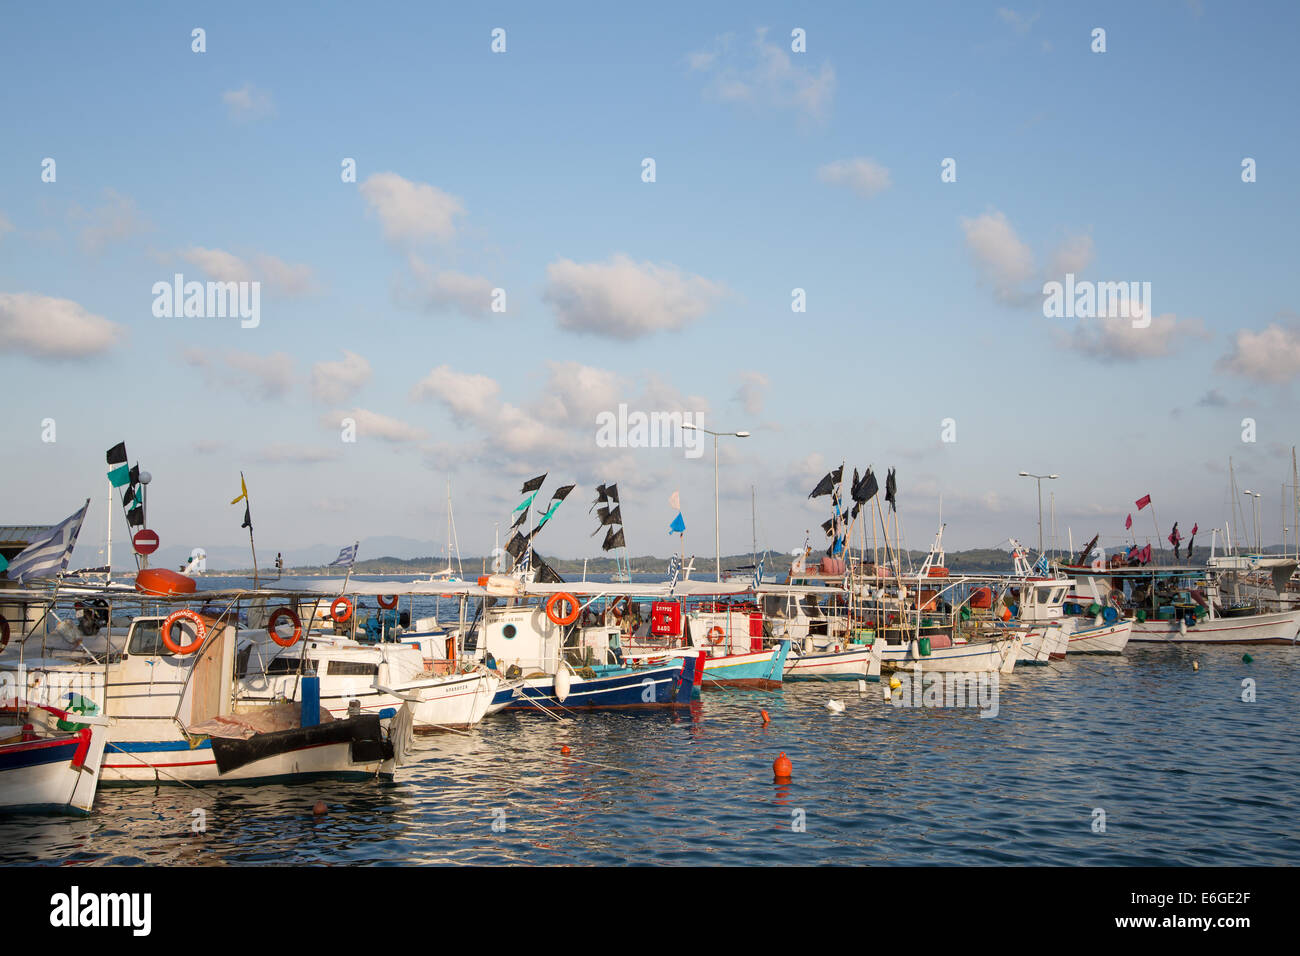 Visite turistiche in Grecia: tradizionali barche da pesca sulle isole greche in un porto. Foto Stock